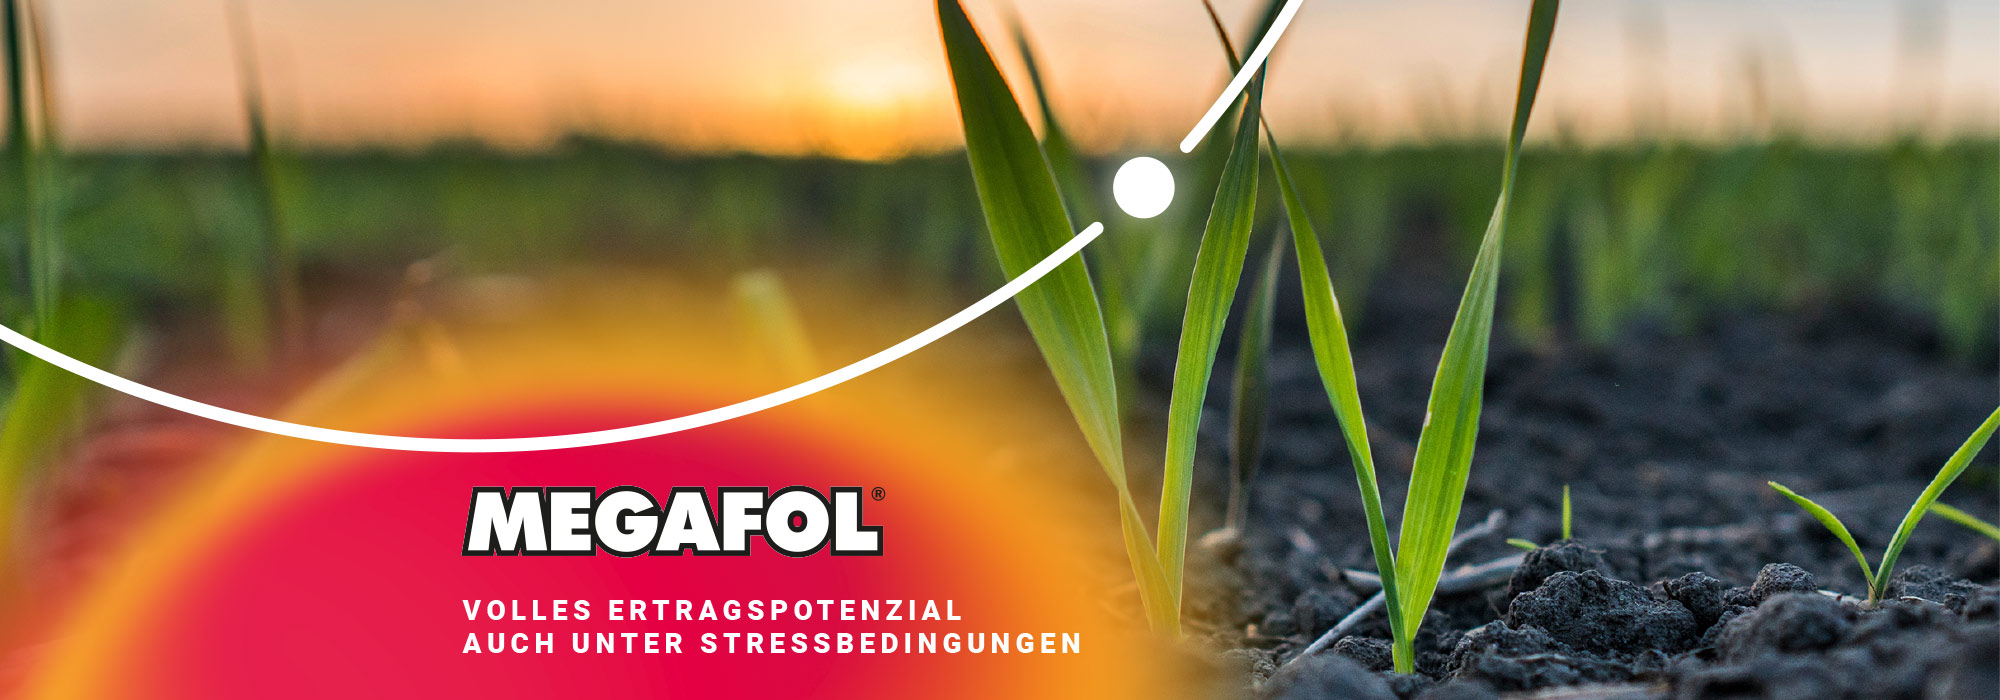 Megafol sichert den Getreideertrag bei Stress ab.